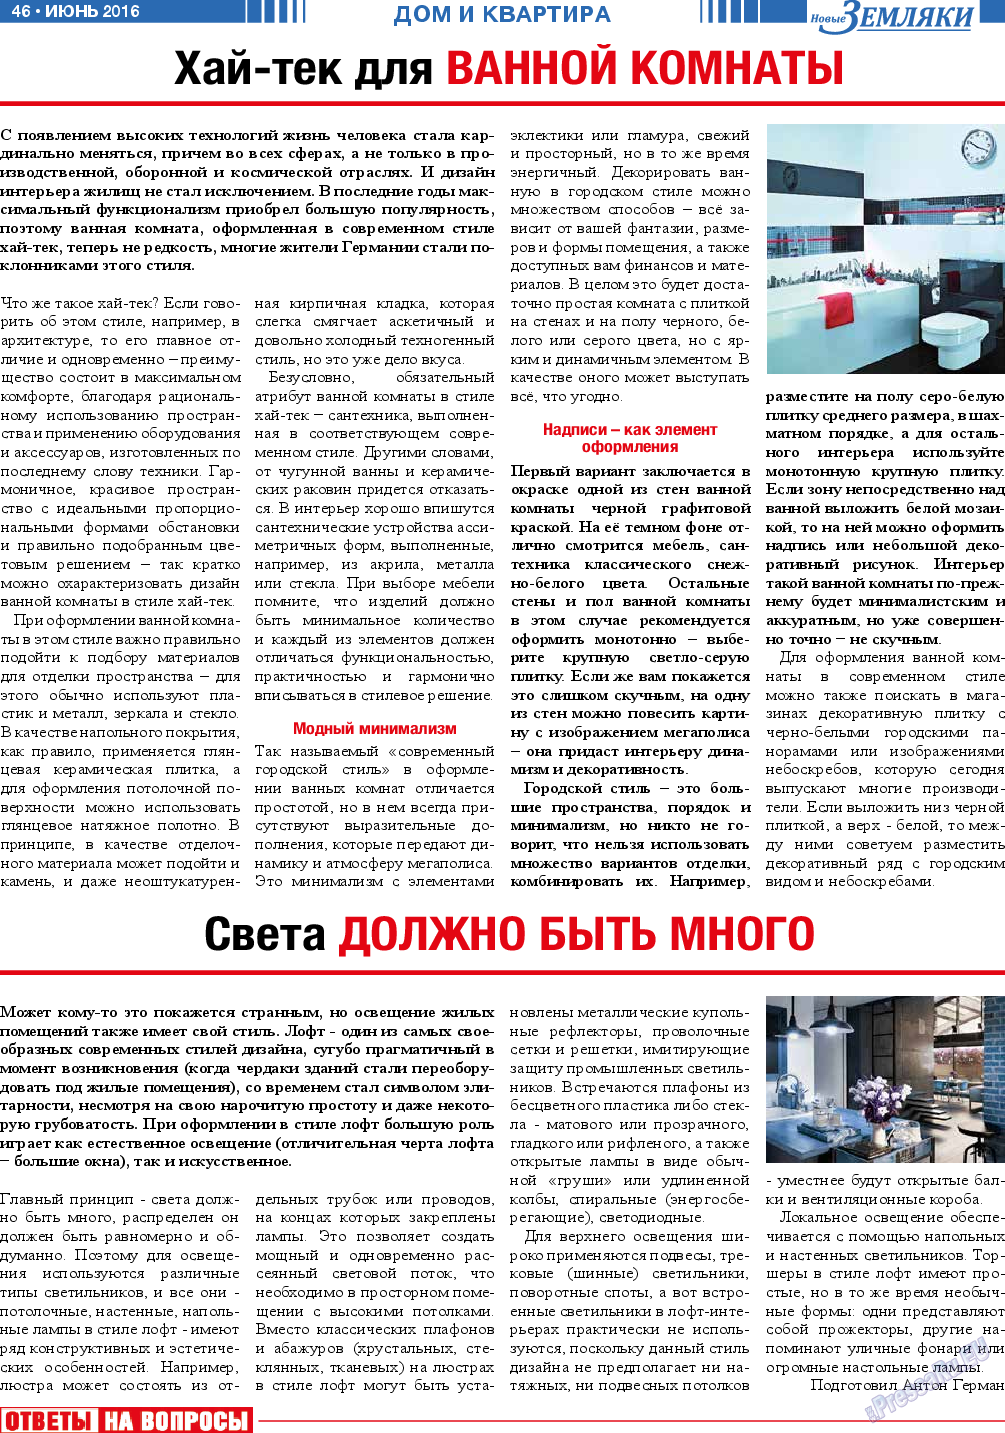 Новые Земляки (газета). 2016 год, номер 6, стр. 46